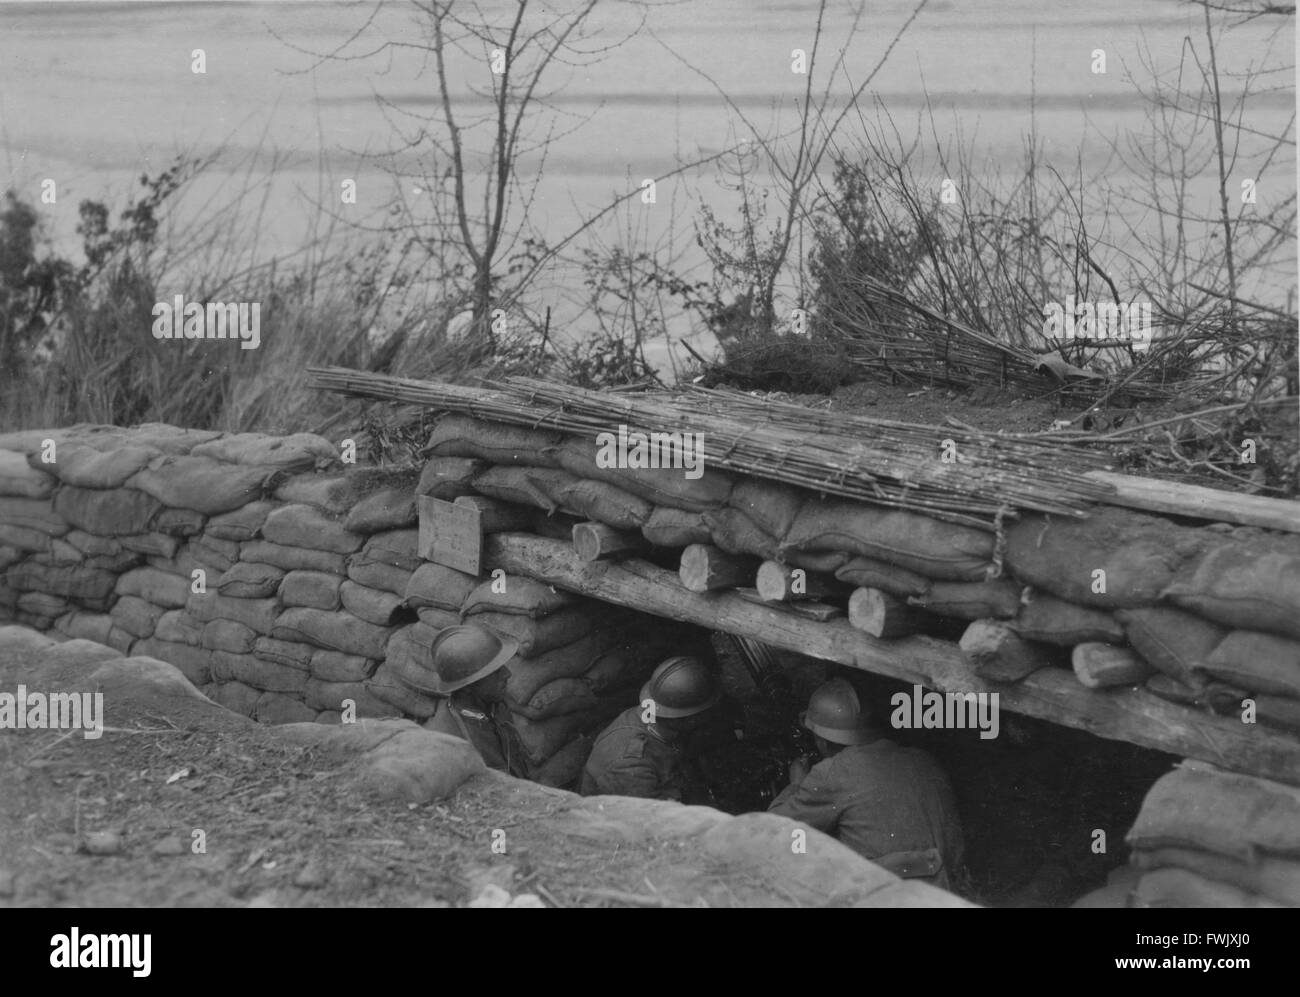 Des soldats italiens de l'homme un nid de mitrailleuses au cours de la PREMIÈRE GUERRE MONDIALE, vers 1916. Banque D'Images